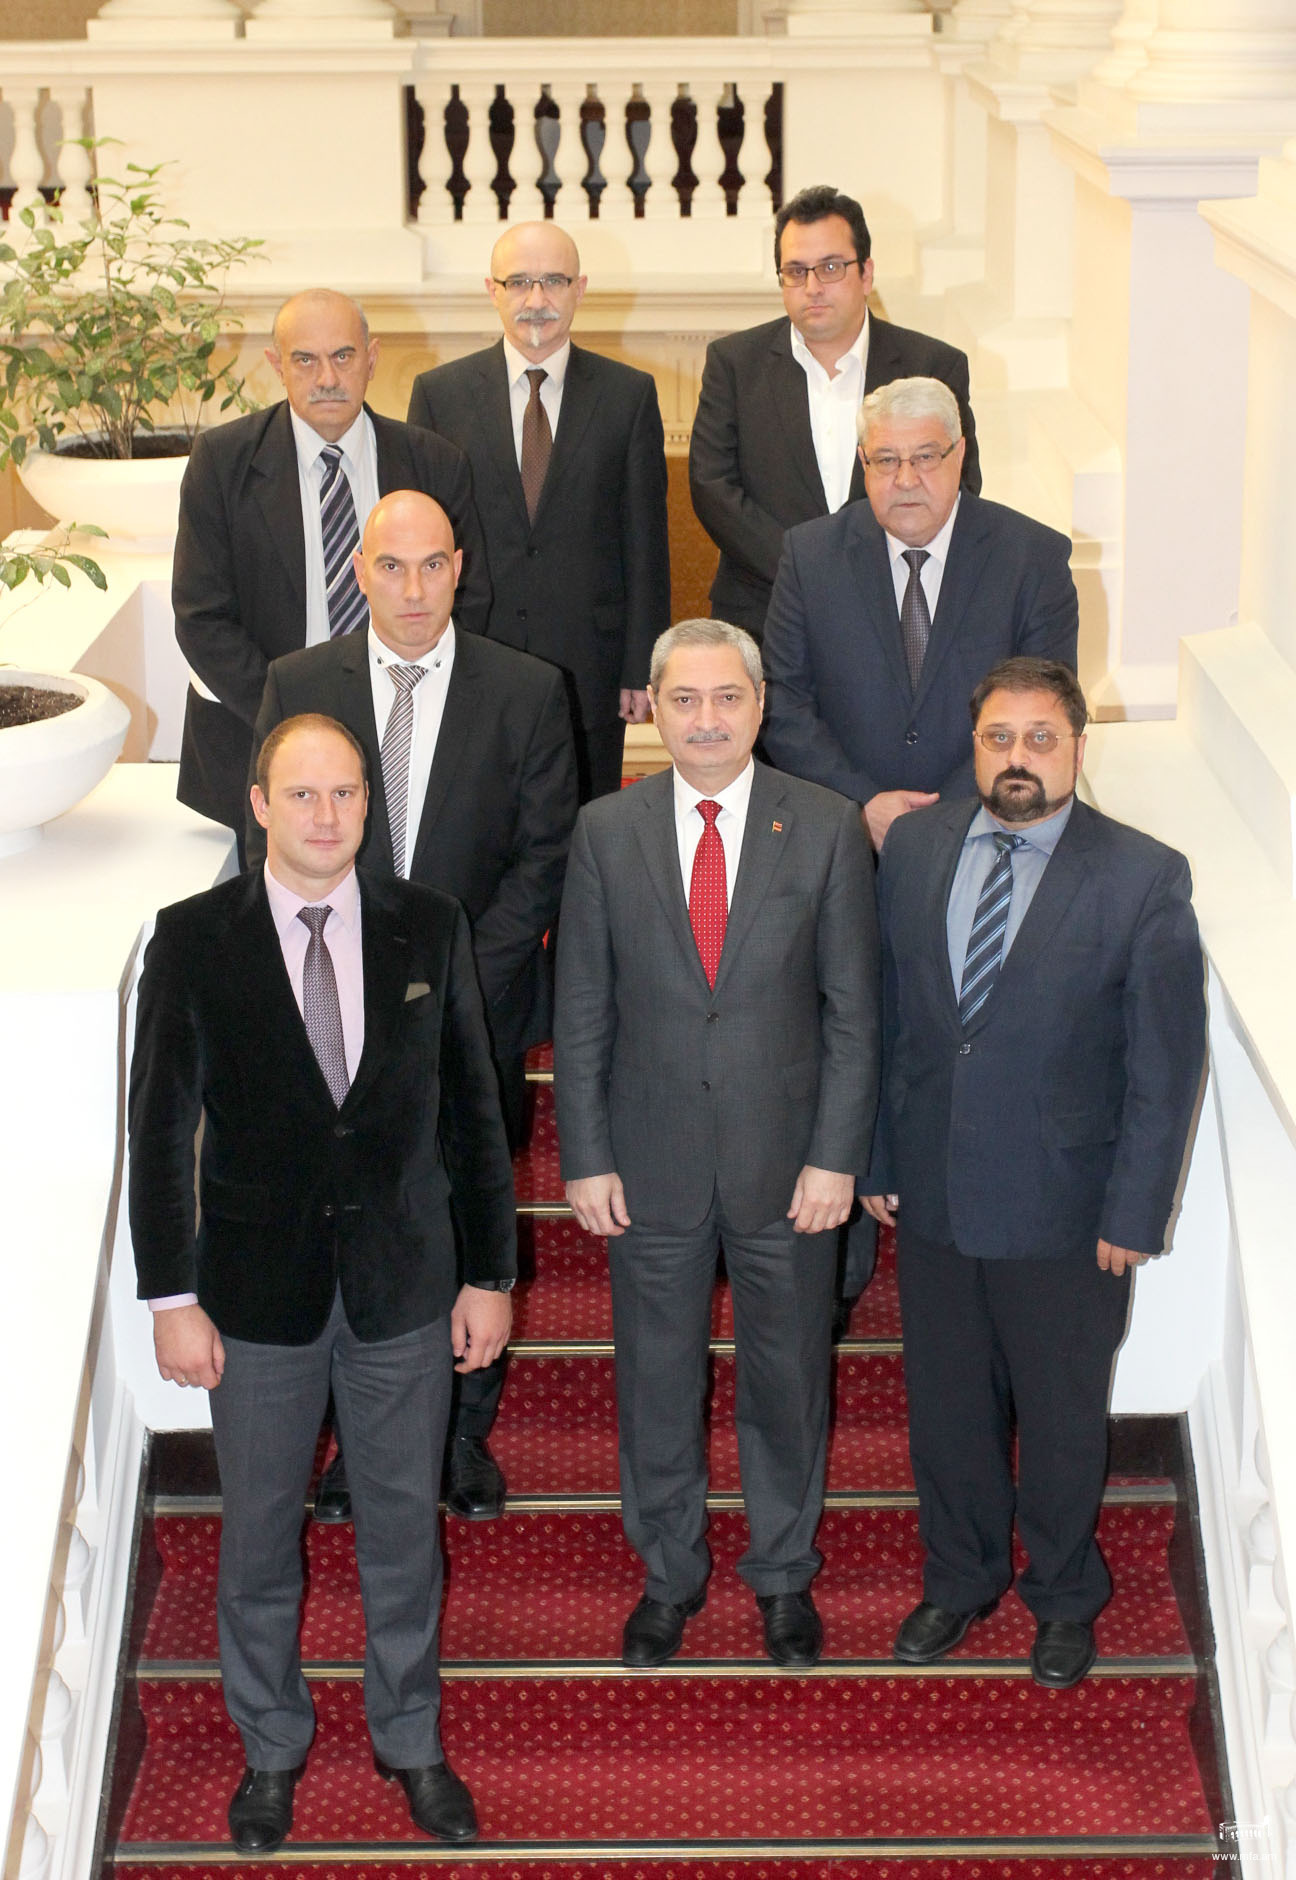 Բուլղարիա-Հայաստան պատգամավորական բարեկամական խմբի հետ պաշտոնական հանդիպում ԲՀ խորհրդարանում